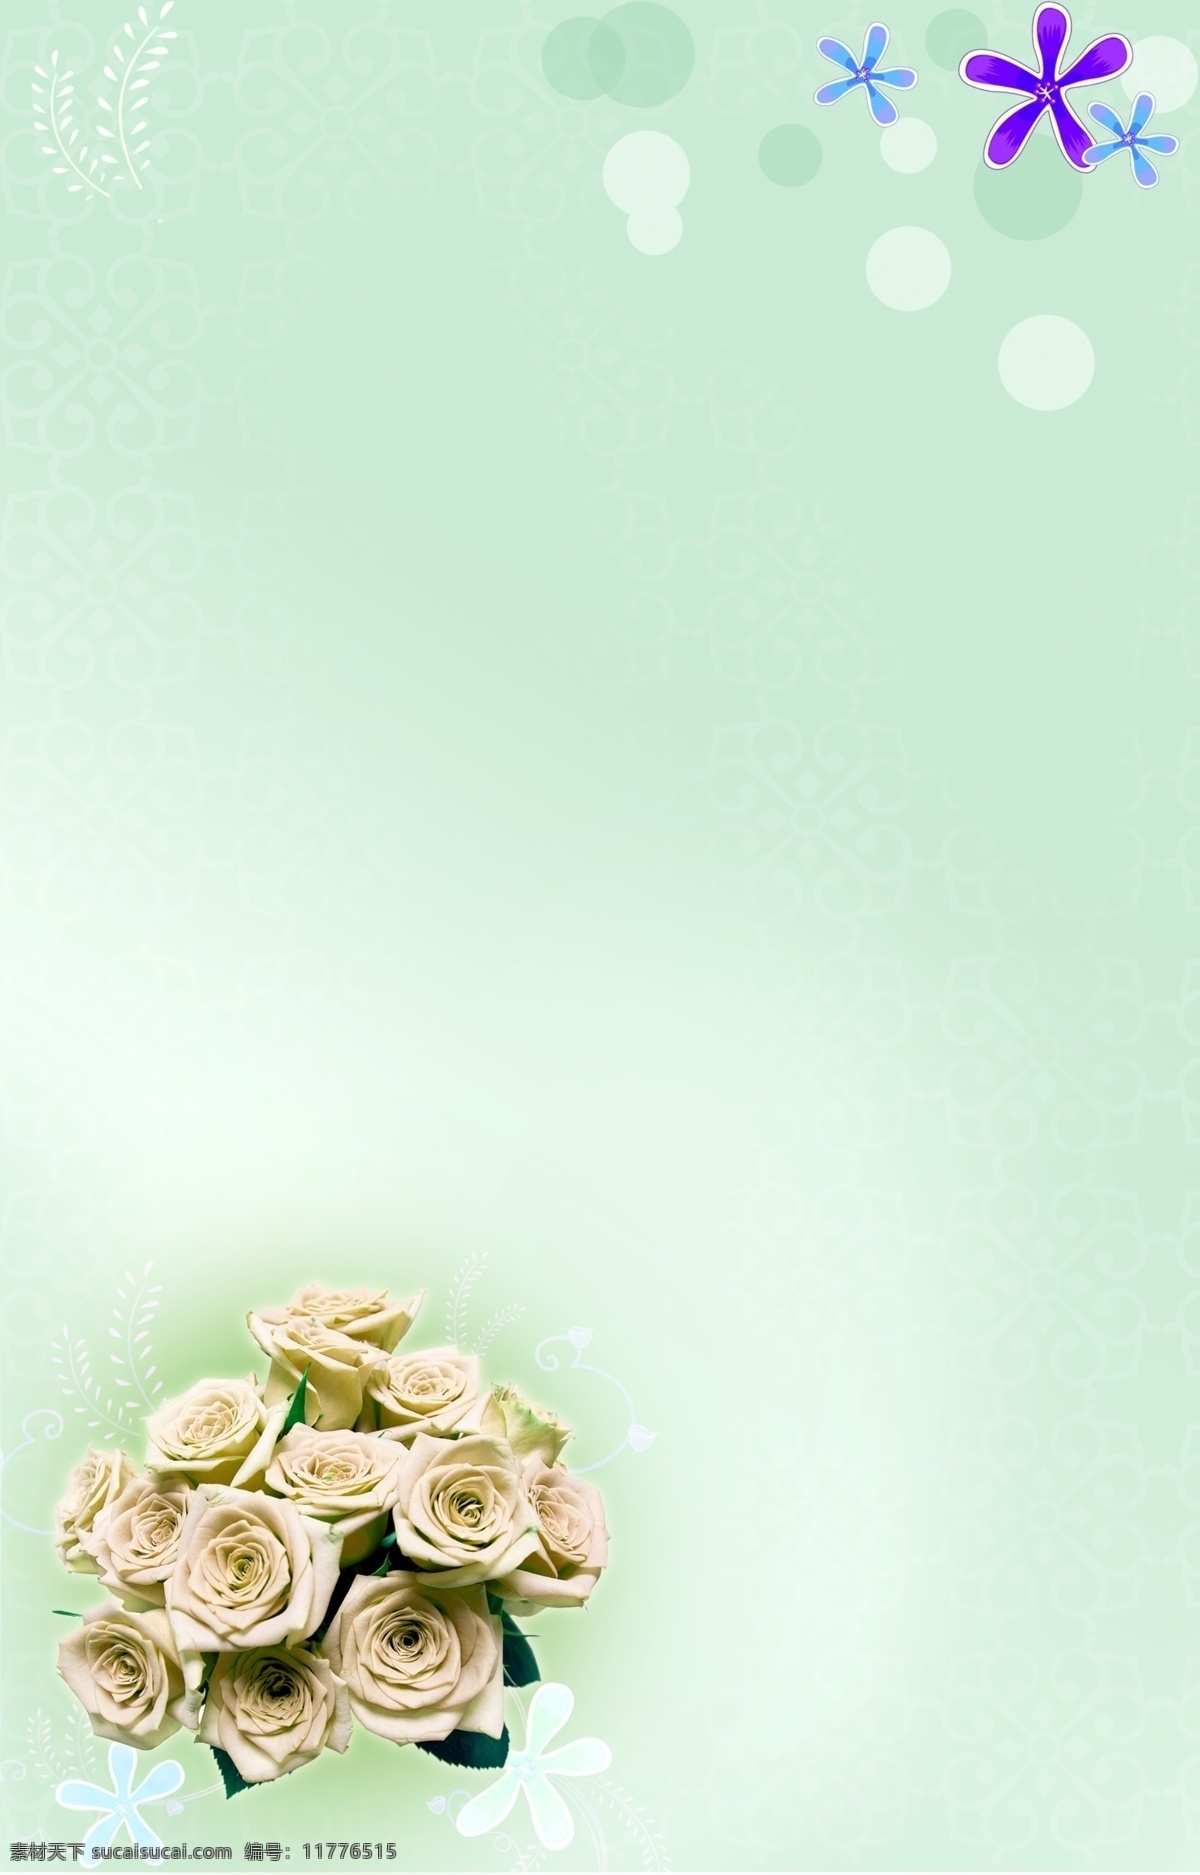 分层 淡雅 婚礼海报 婚礼海报设计 玫瑰 清秀 星光点点 源文件 婚礼 海报 模板下载 湖蓝 素丽 psd源文件